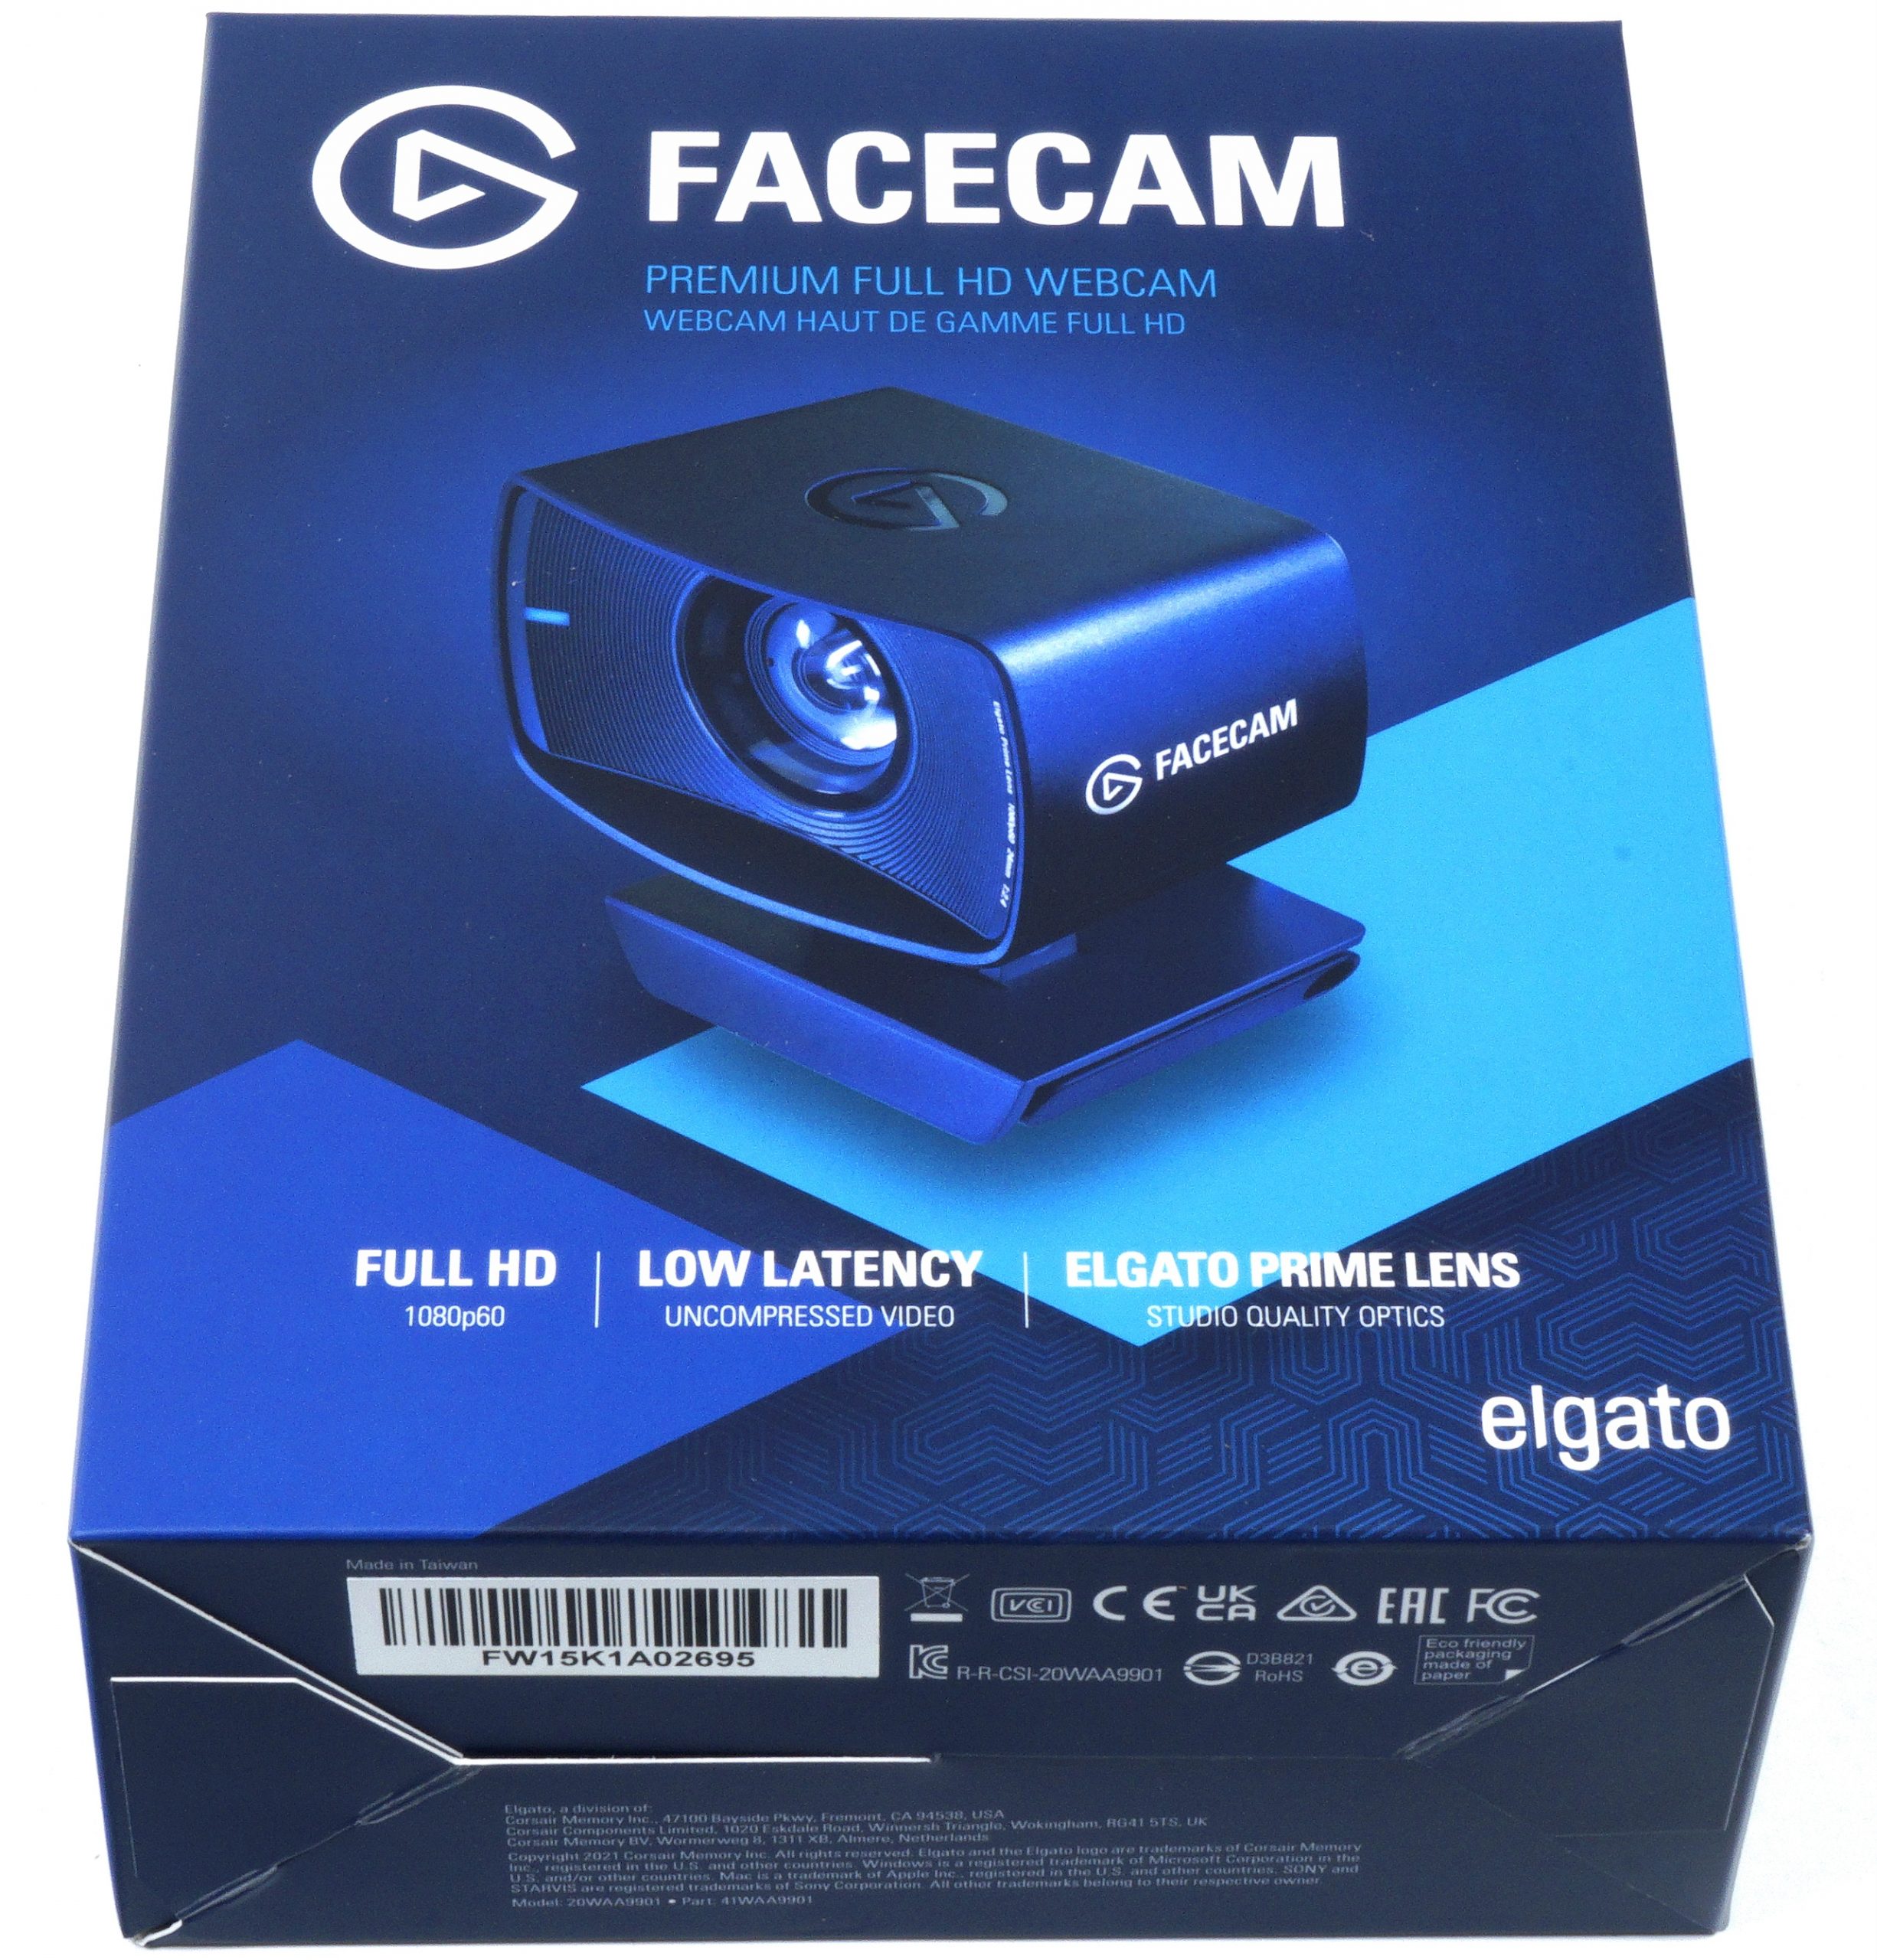 Elgato Facecam Thread : r/elgato